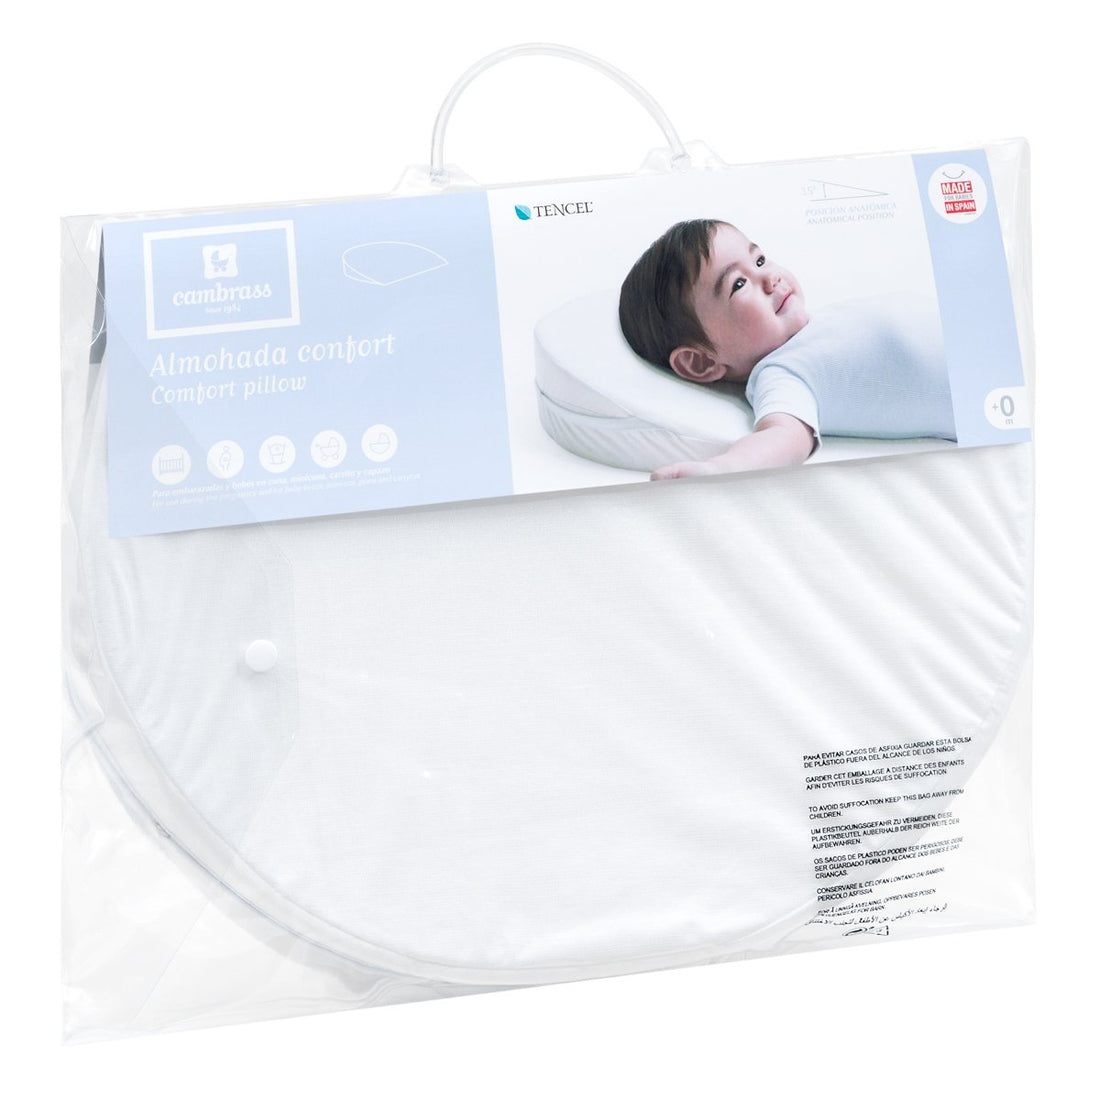 cambrass-comfort-pillow-mini-liso-e-white-37x29cm-rjc-34523- (2)